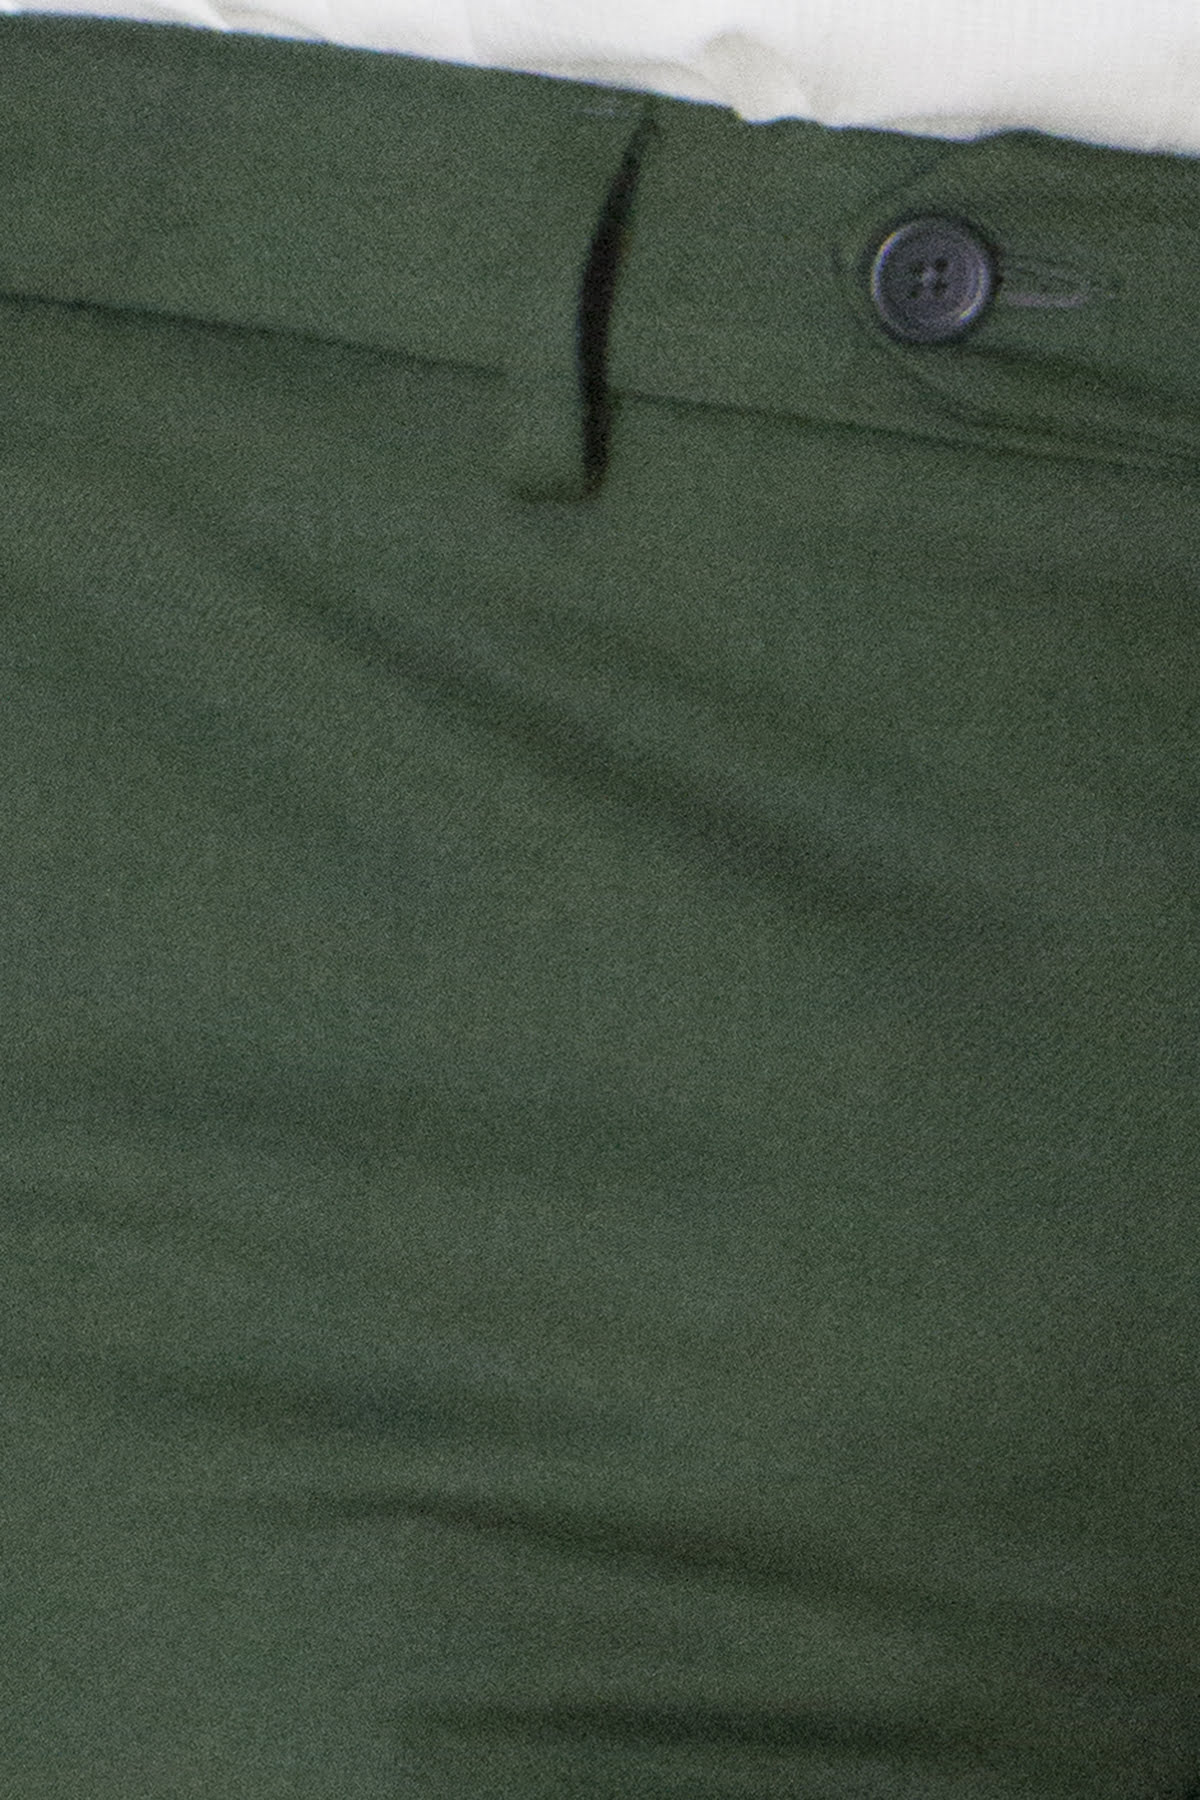 Pantalone uomo militare in lana con tasche america e risvolto 4cm